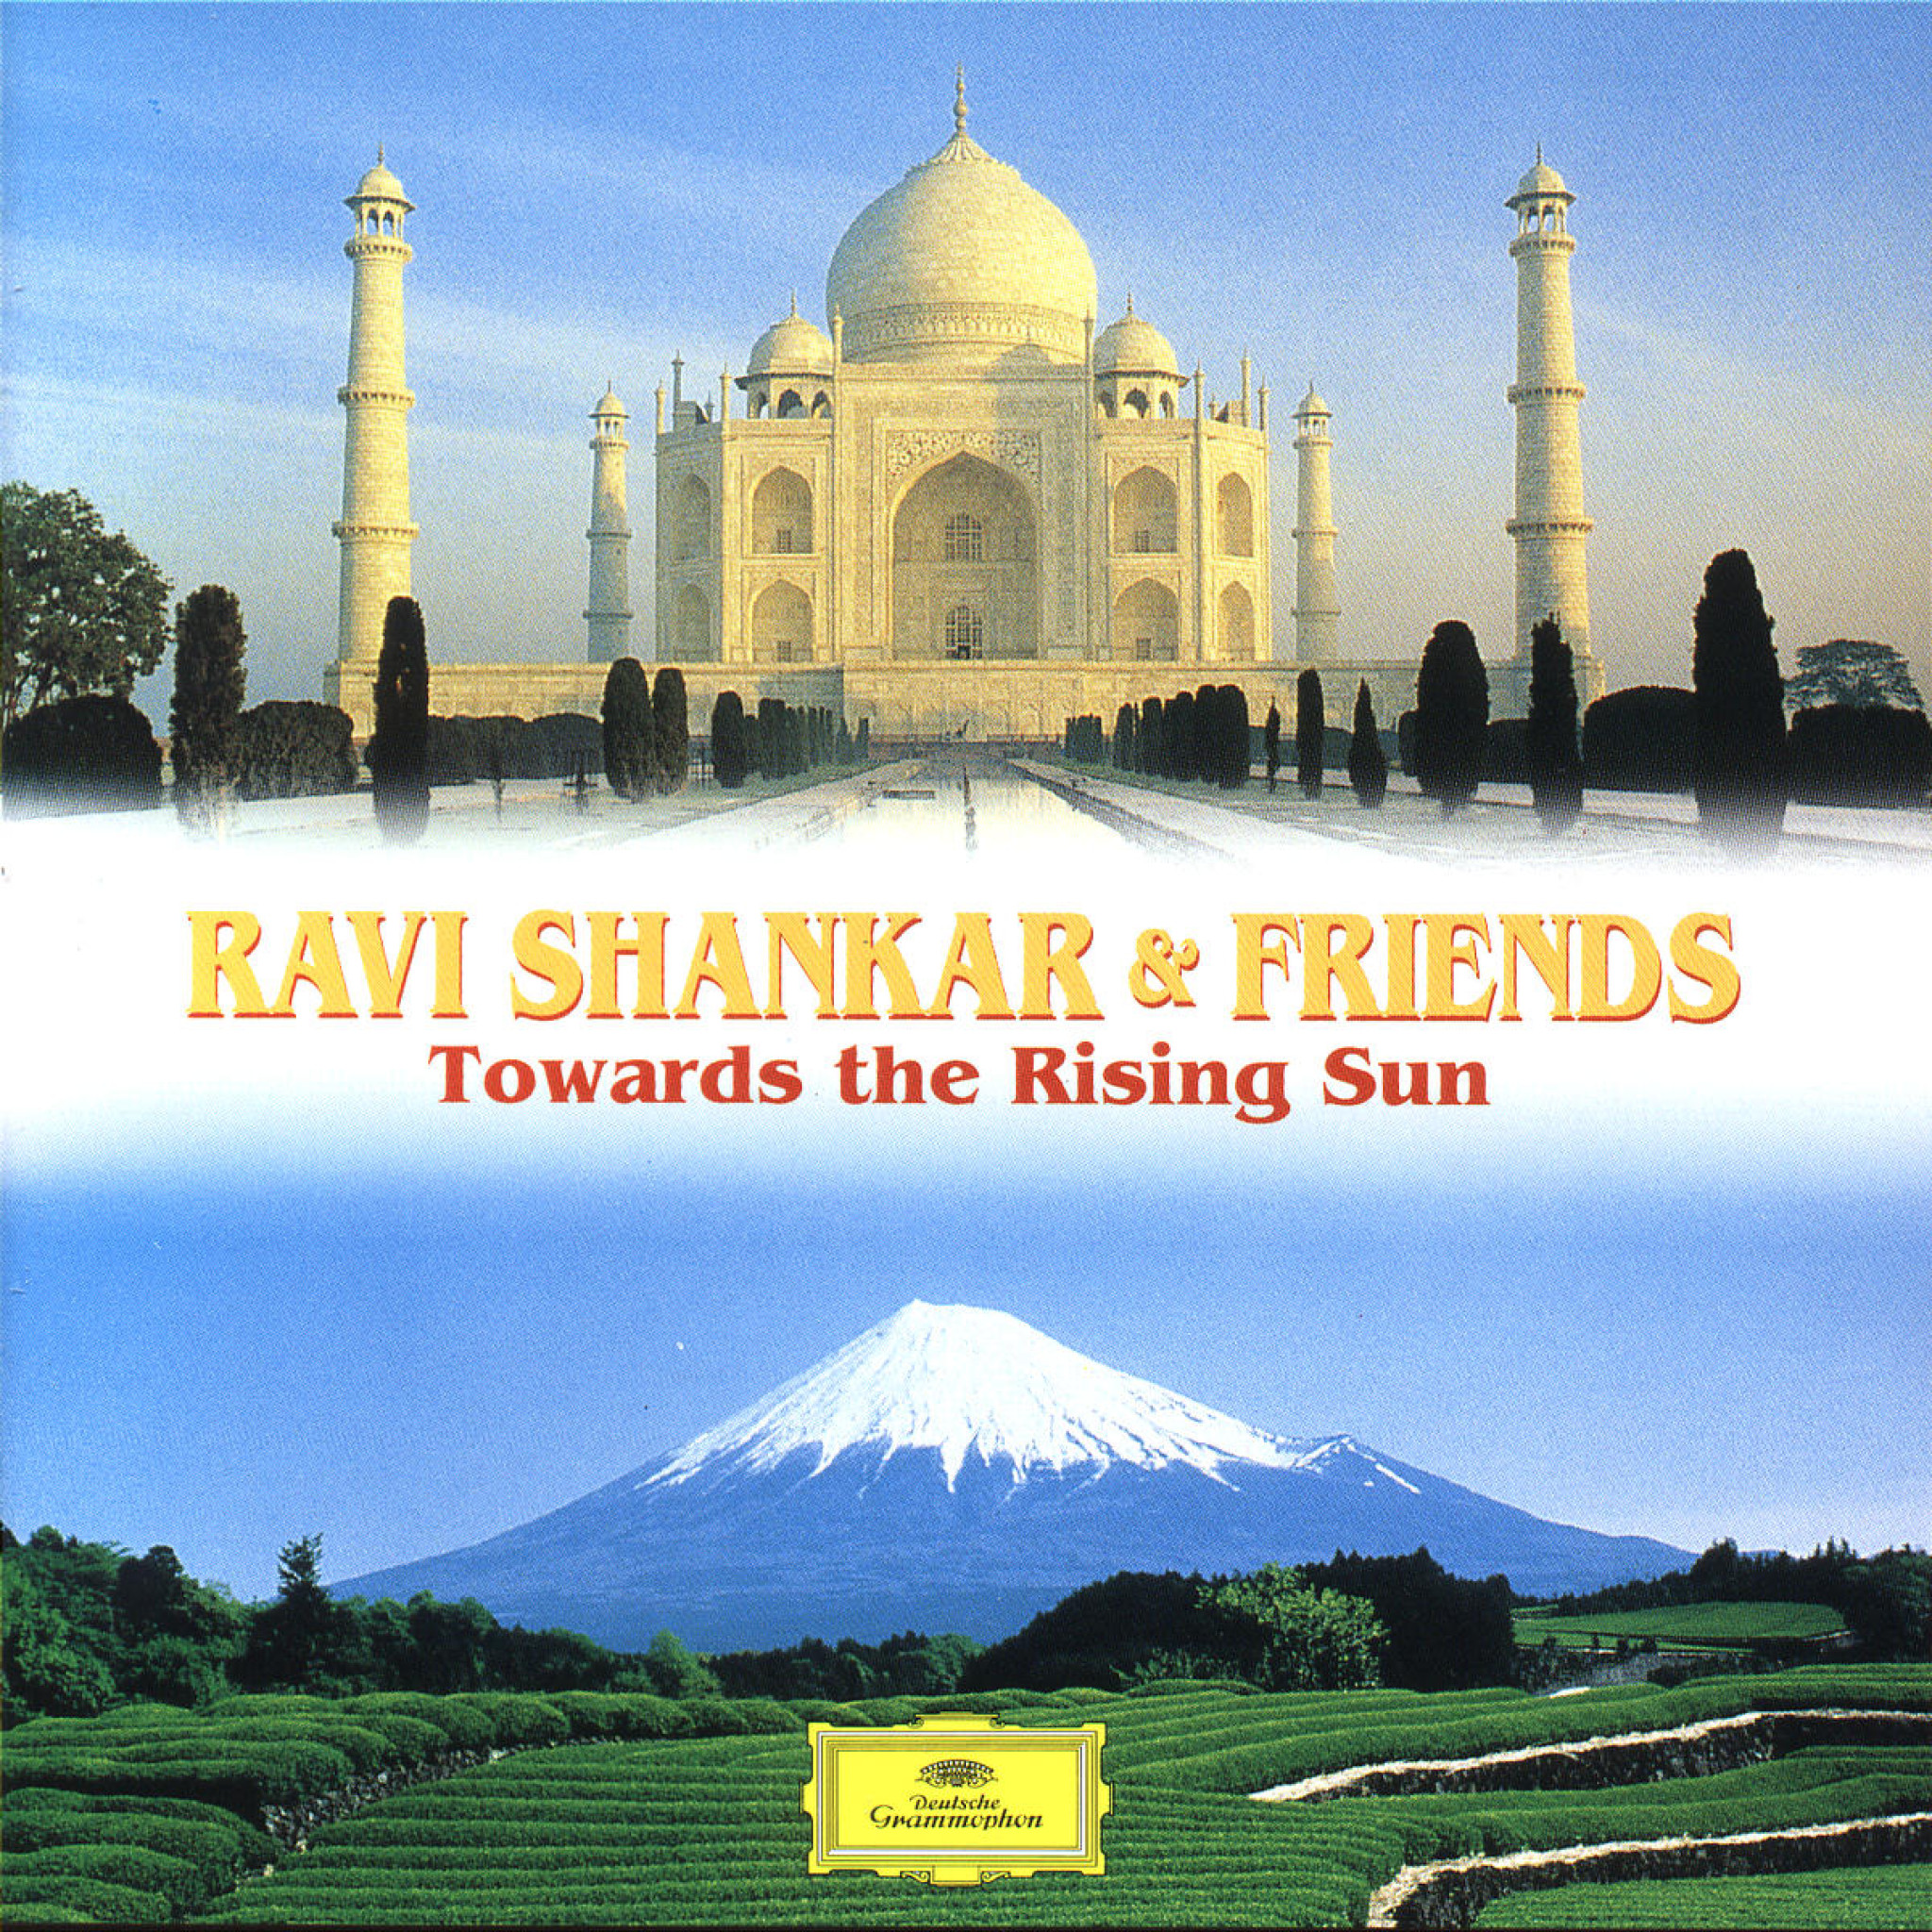 RAVI SHANKAR & FRIENDS